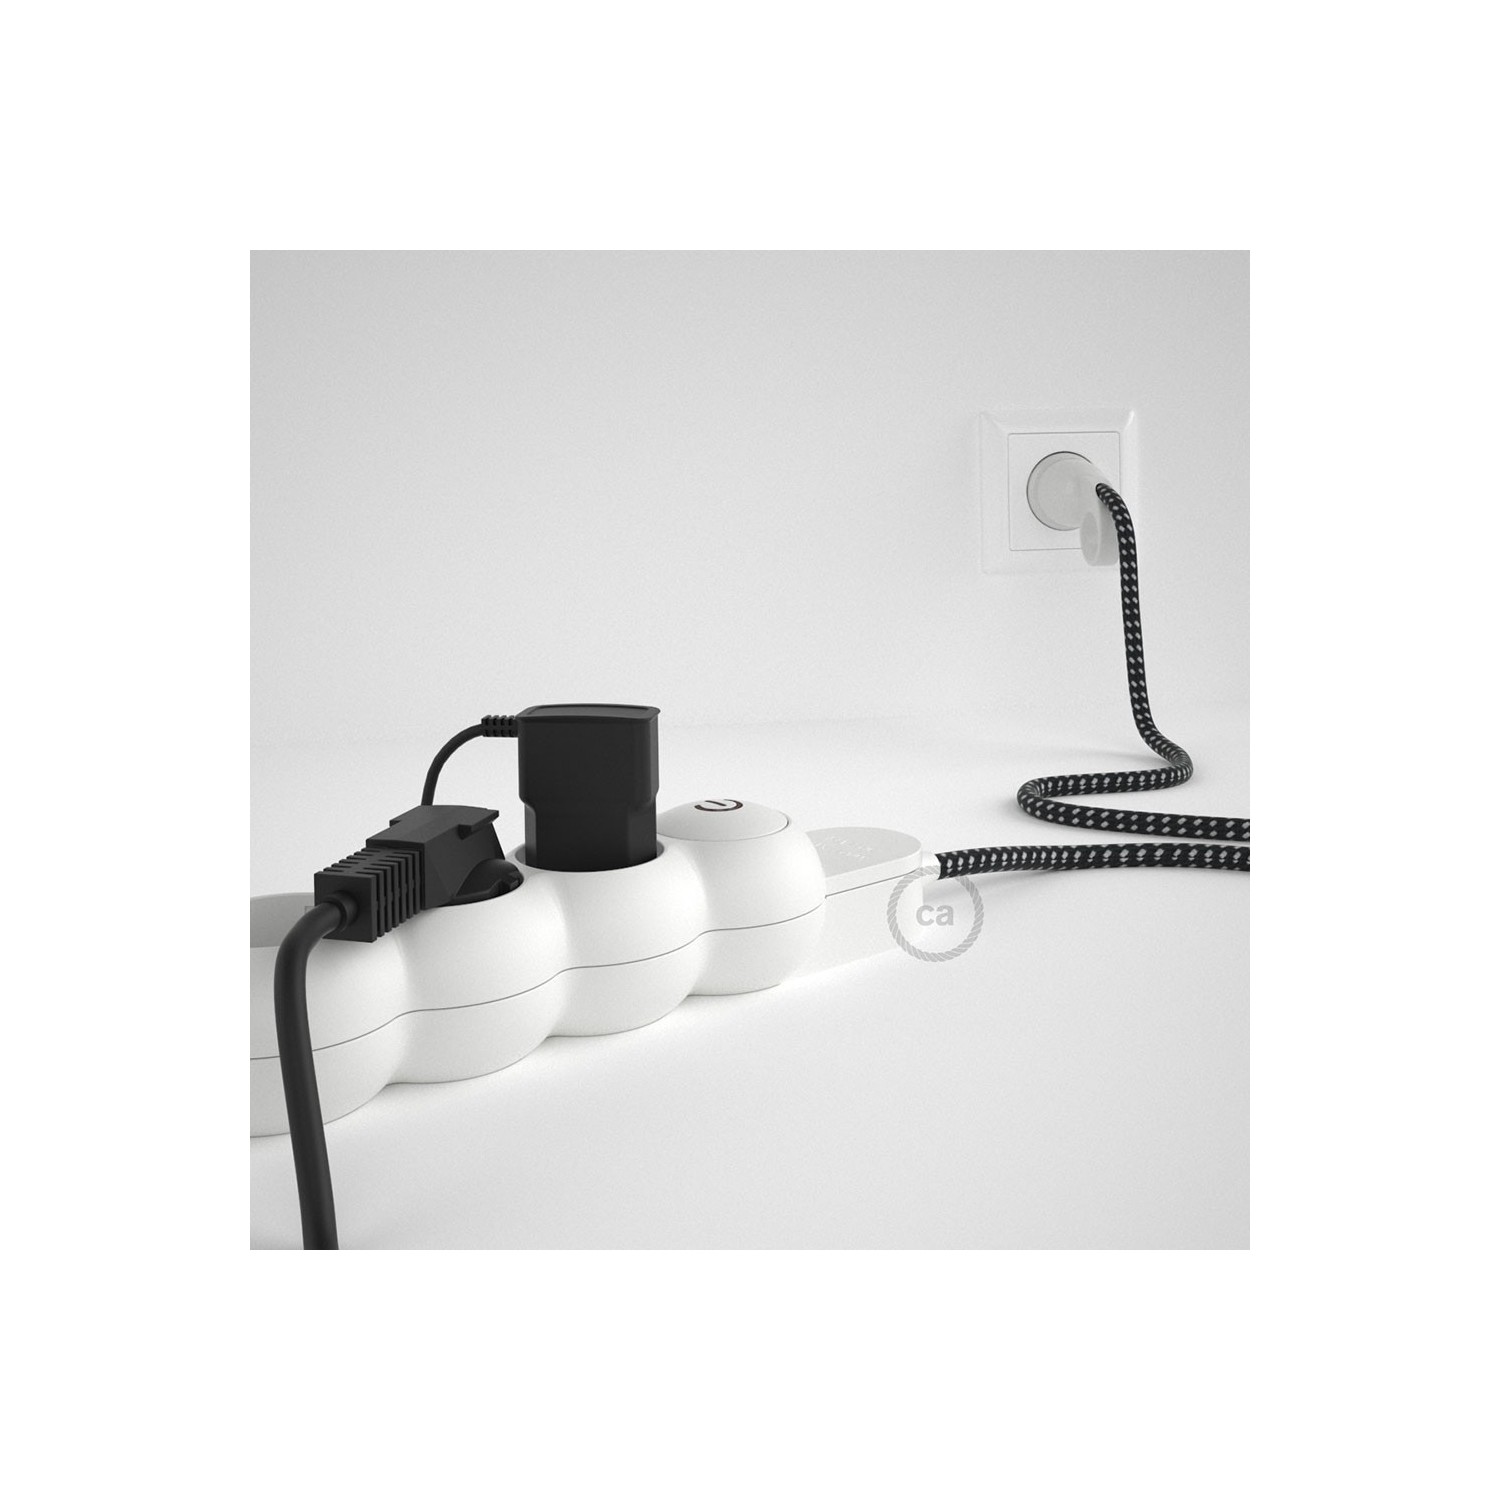 Stekkerdoos met strijkijzersnoer in 3D effect RT41 sterretjes en randaarde stekker met comfortabele "ring" grip